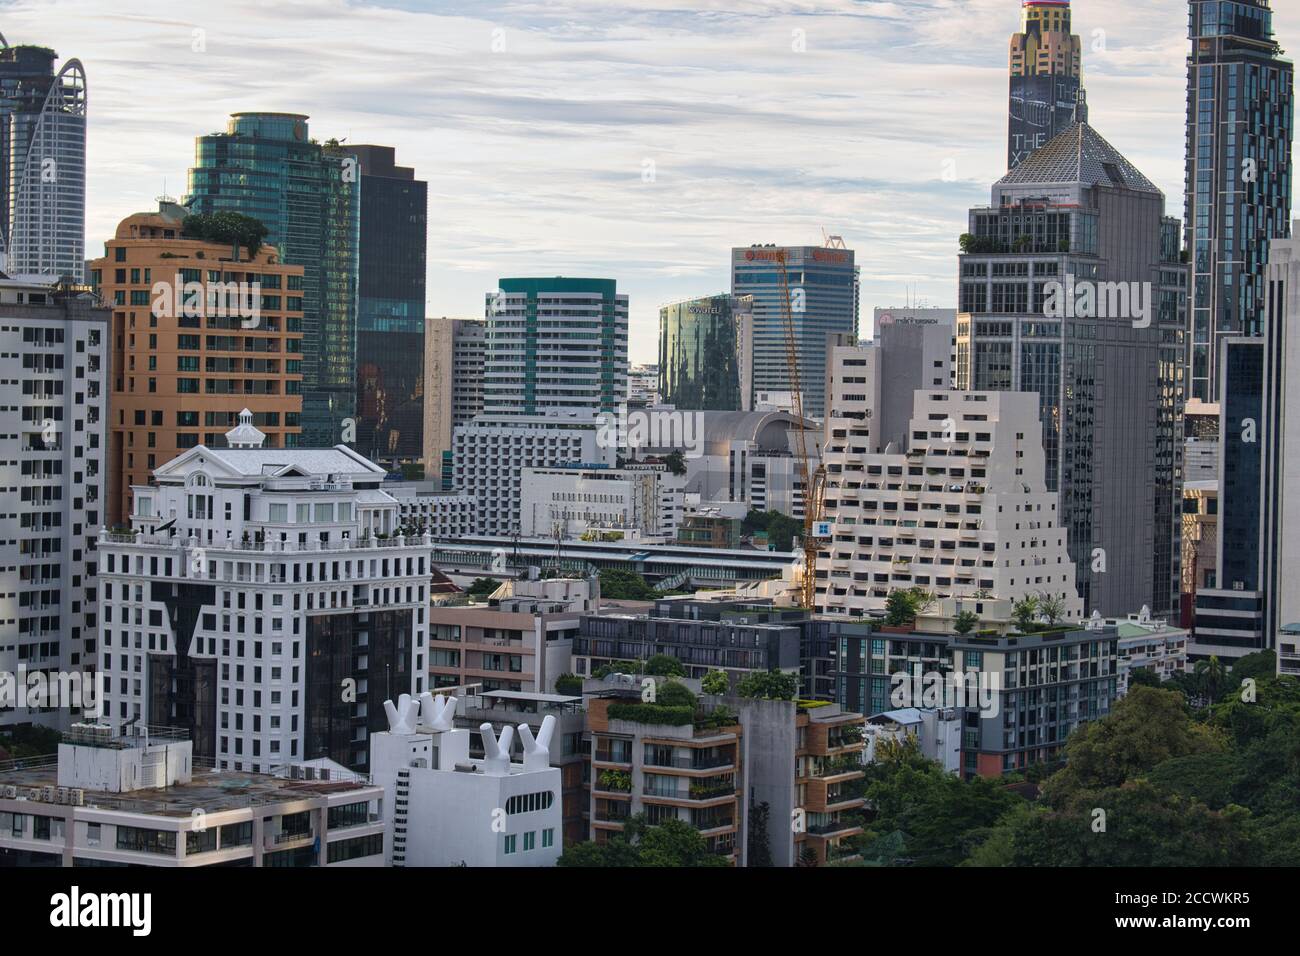 Lo splendido skyline di Bangkok, la capitale della Thailandia con tutti i suoi grattacieli di giorno! Foto Stock